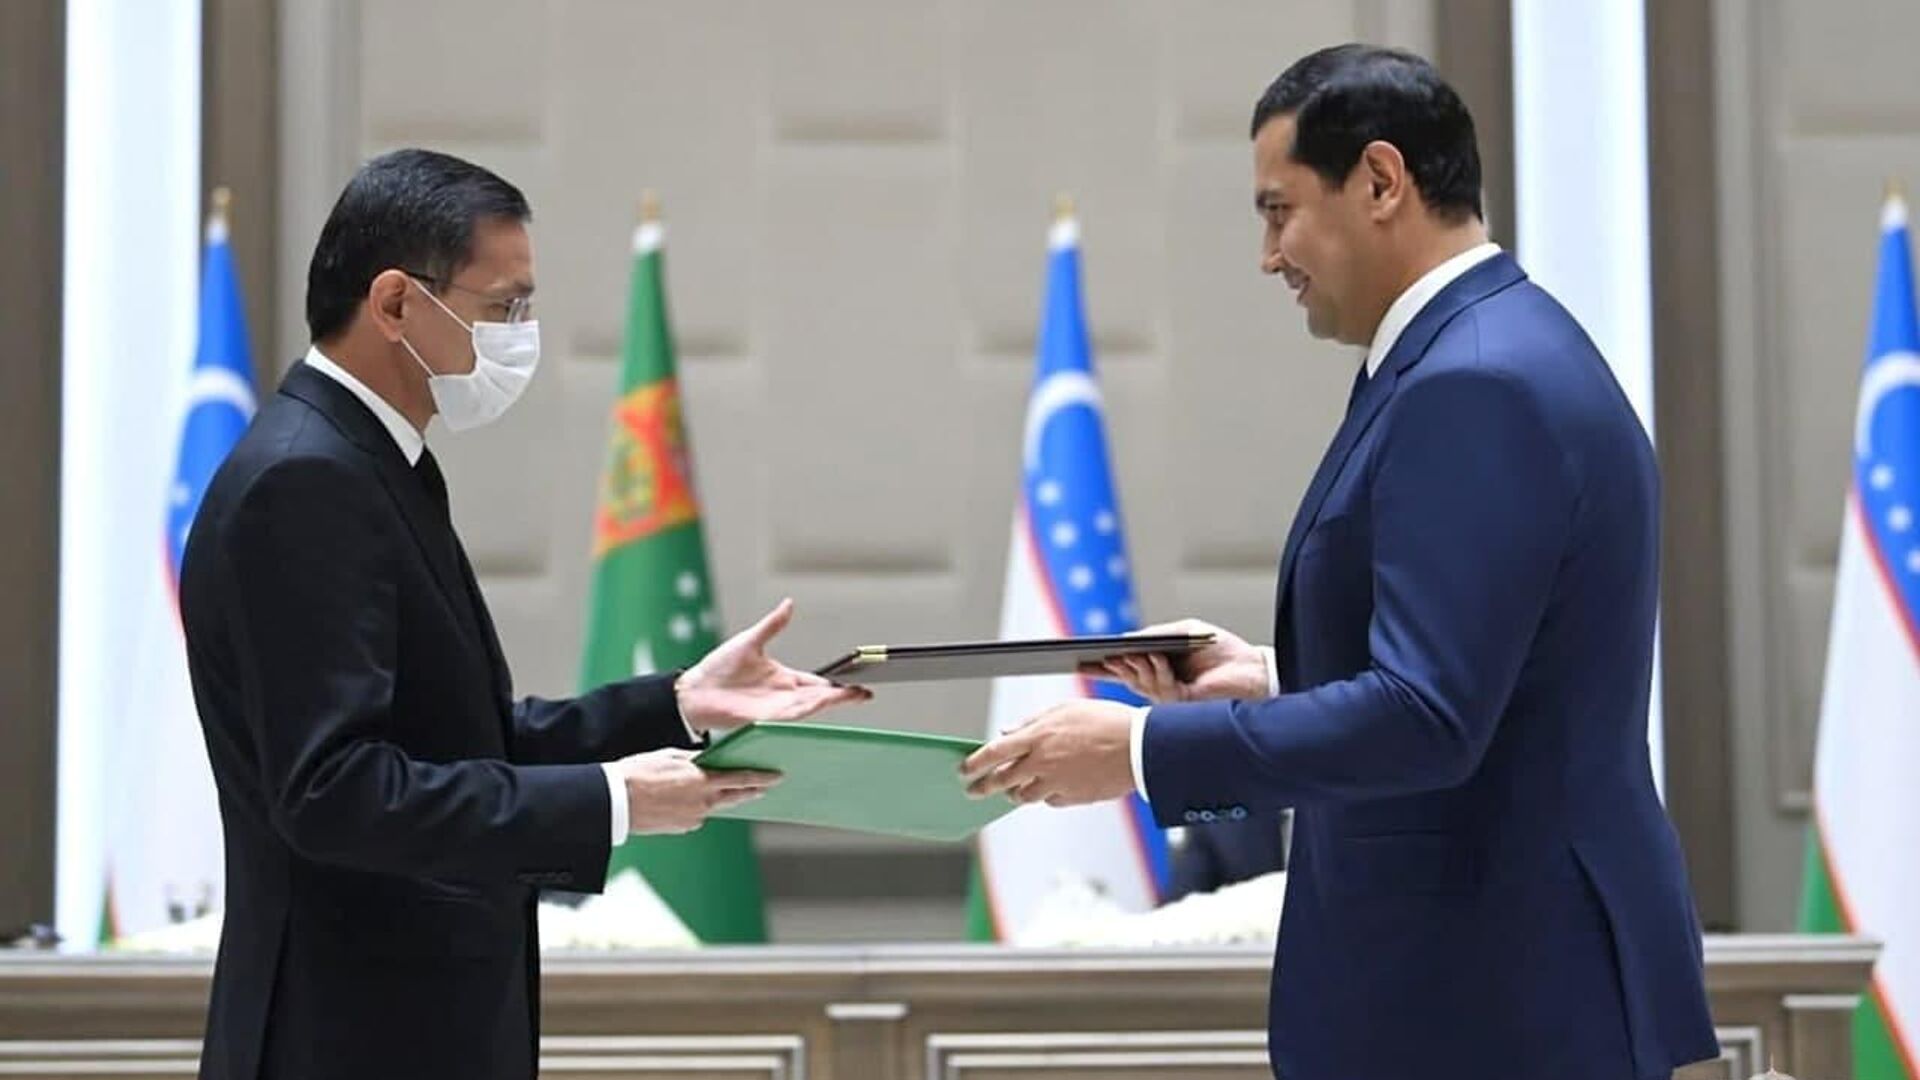 В присутствии глав Узбекистана и Туркменистана состоялся обмен подписанными документами между главами министерств и ведомств двух стран - Sputnik Узбекистан, 1920, 05.10.2021